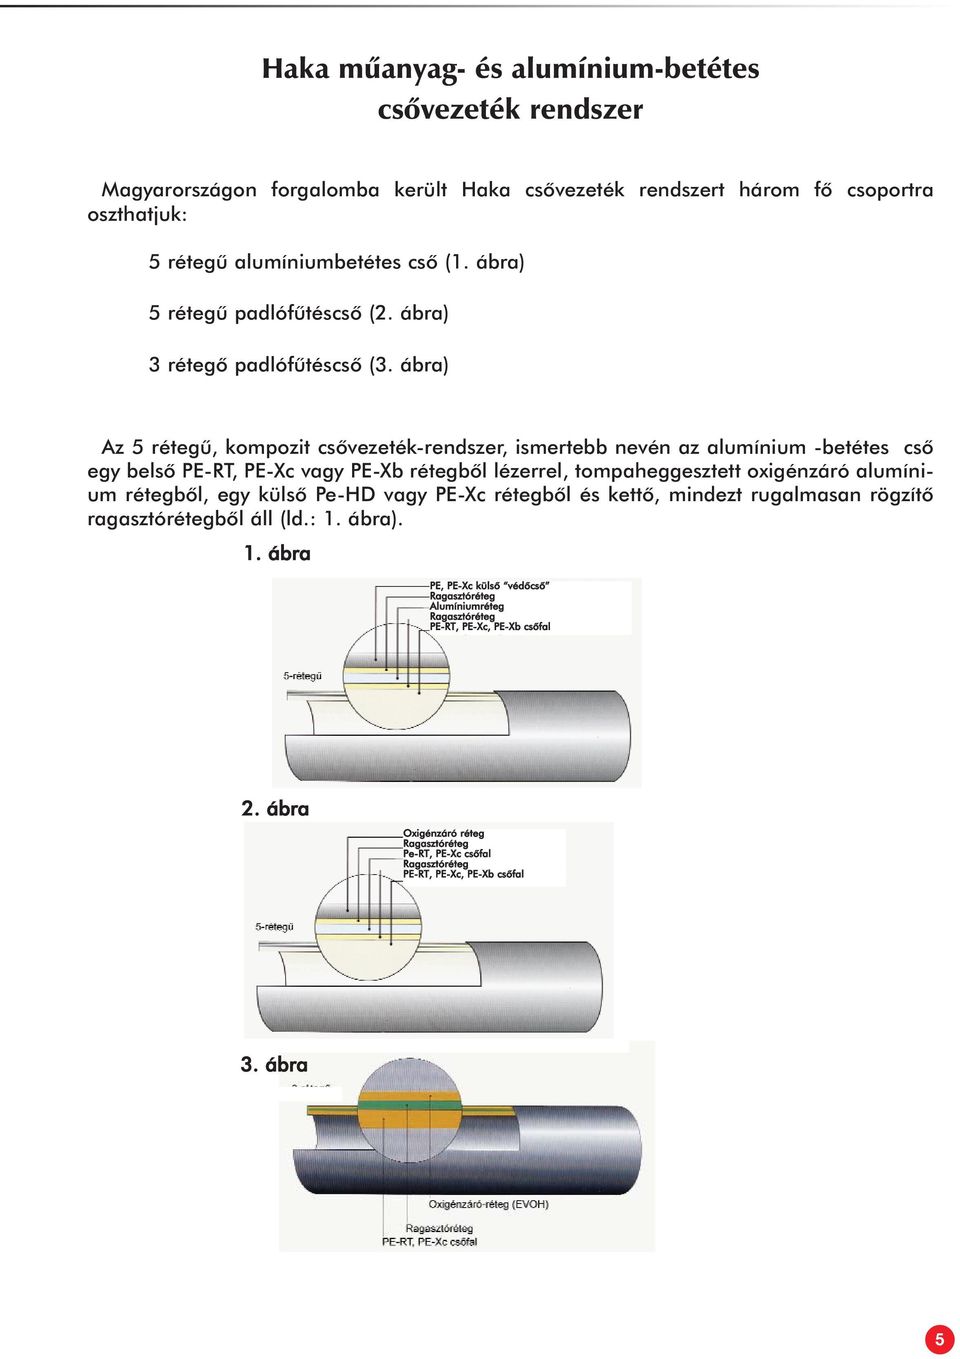 ábra) Az 5 rétegû, kompozit csõvezeték-rendszer, ismertebb nevén az alumínium -betétes csõ egy belsõ PE-RT, PE-Xc vagy PE-Xb rétegbõl lézerrel, tompaheggesztett oxigénzáró alumínium